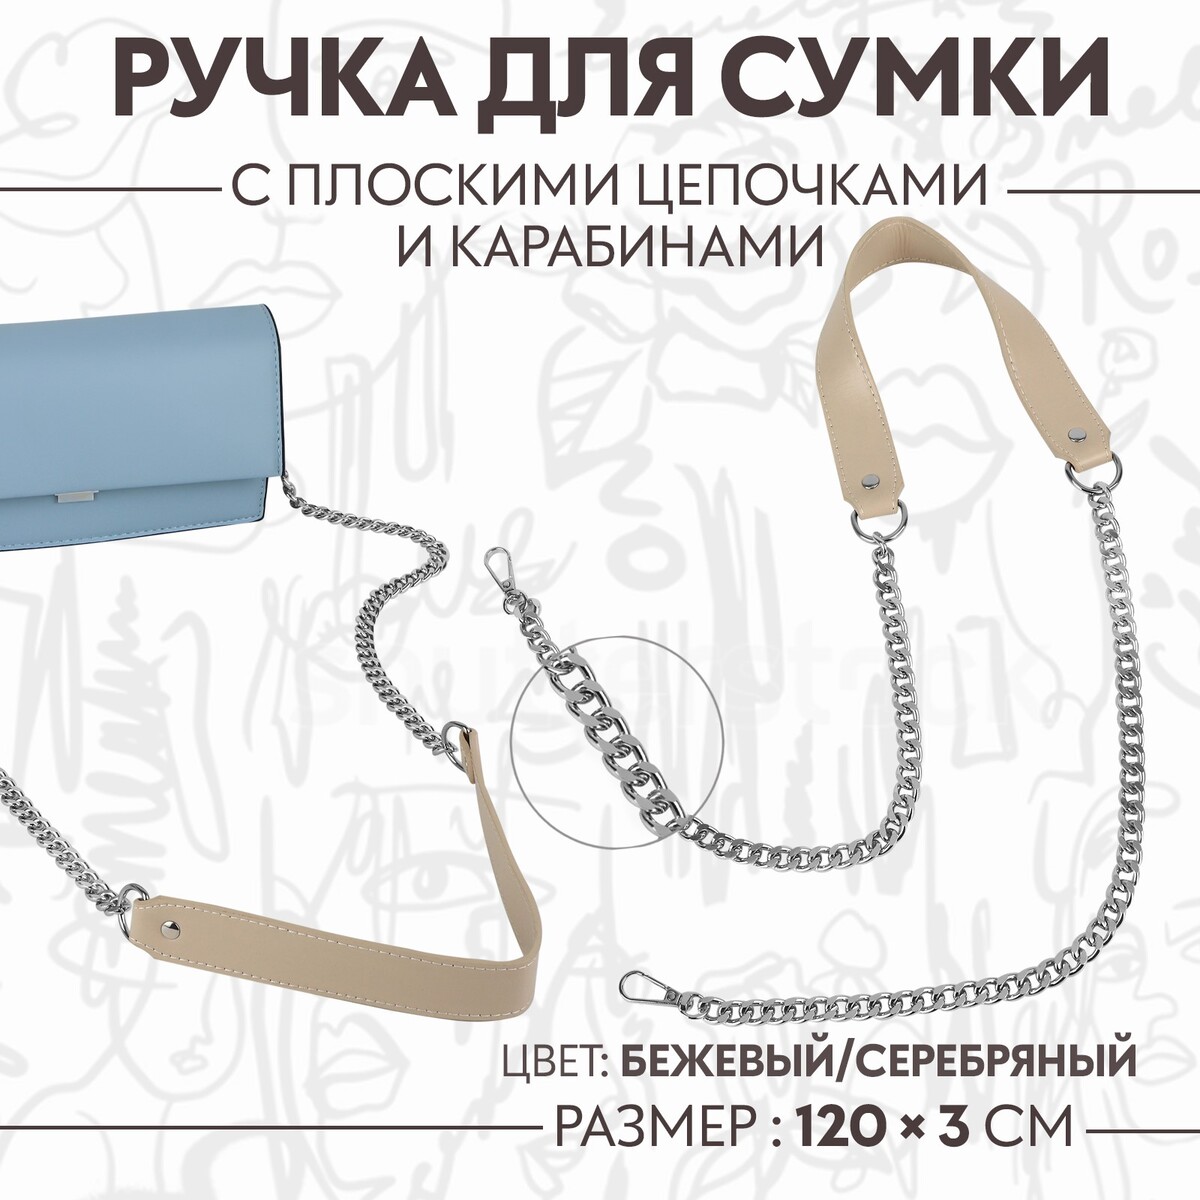 Ручка для сумки, с плоскими цепочками и карабинами, 120 × 3 см, цвет бежевый/серебряный